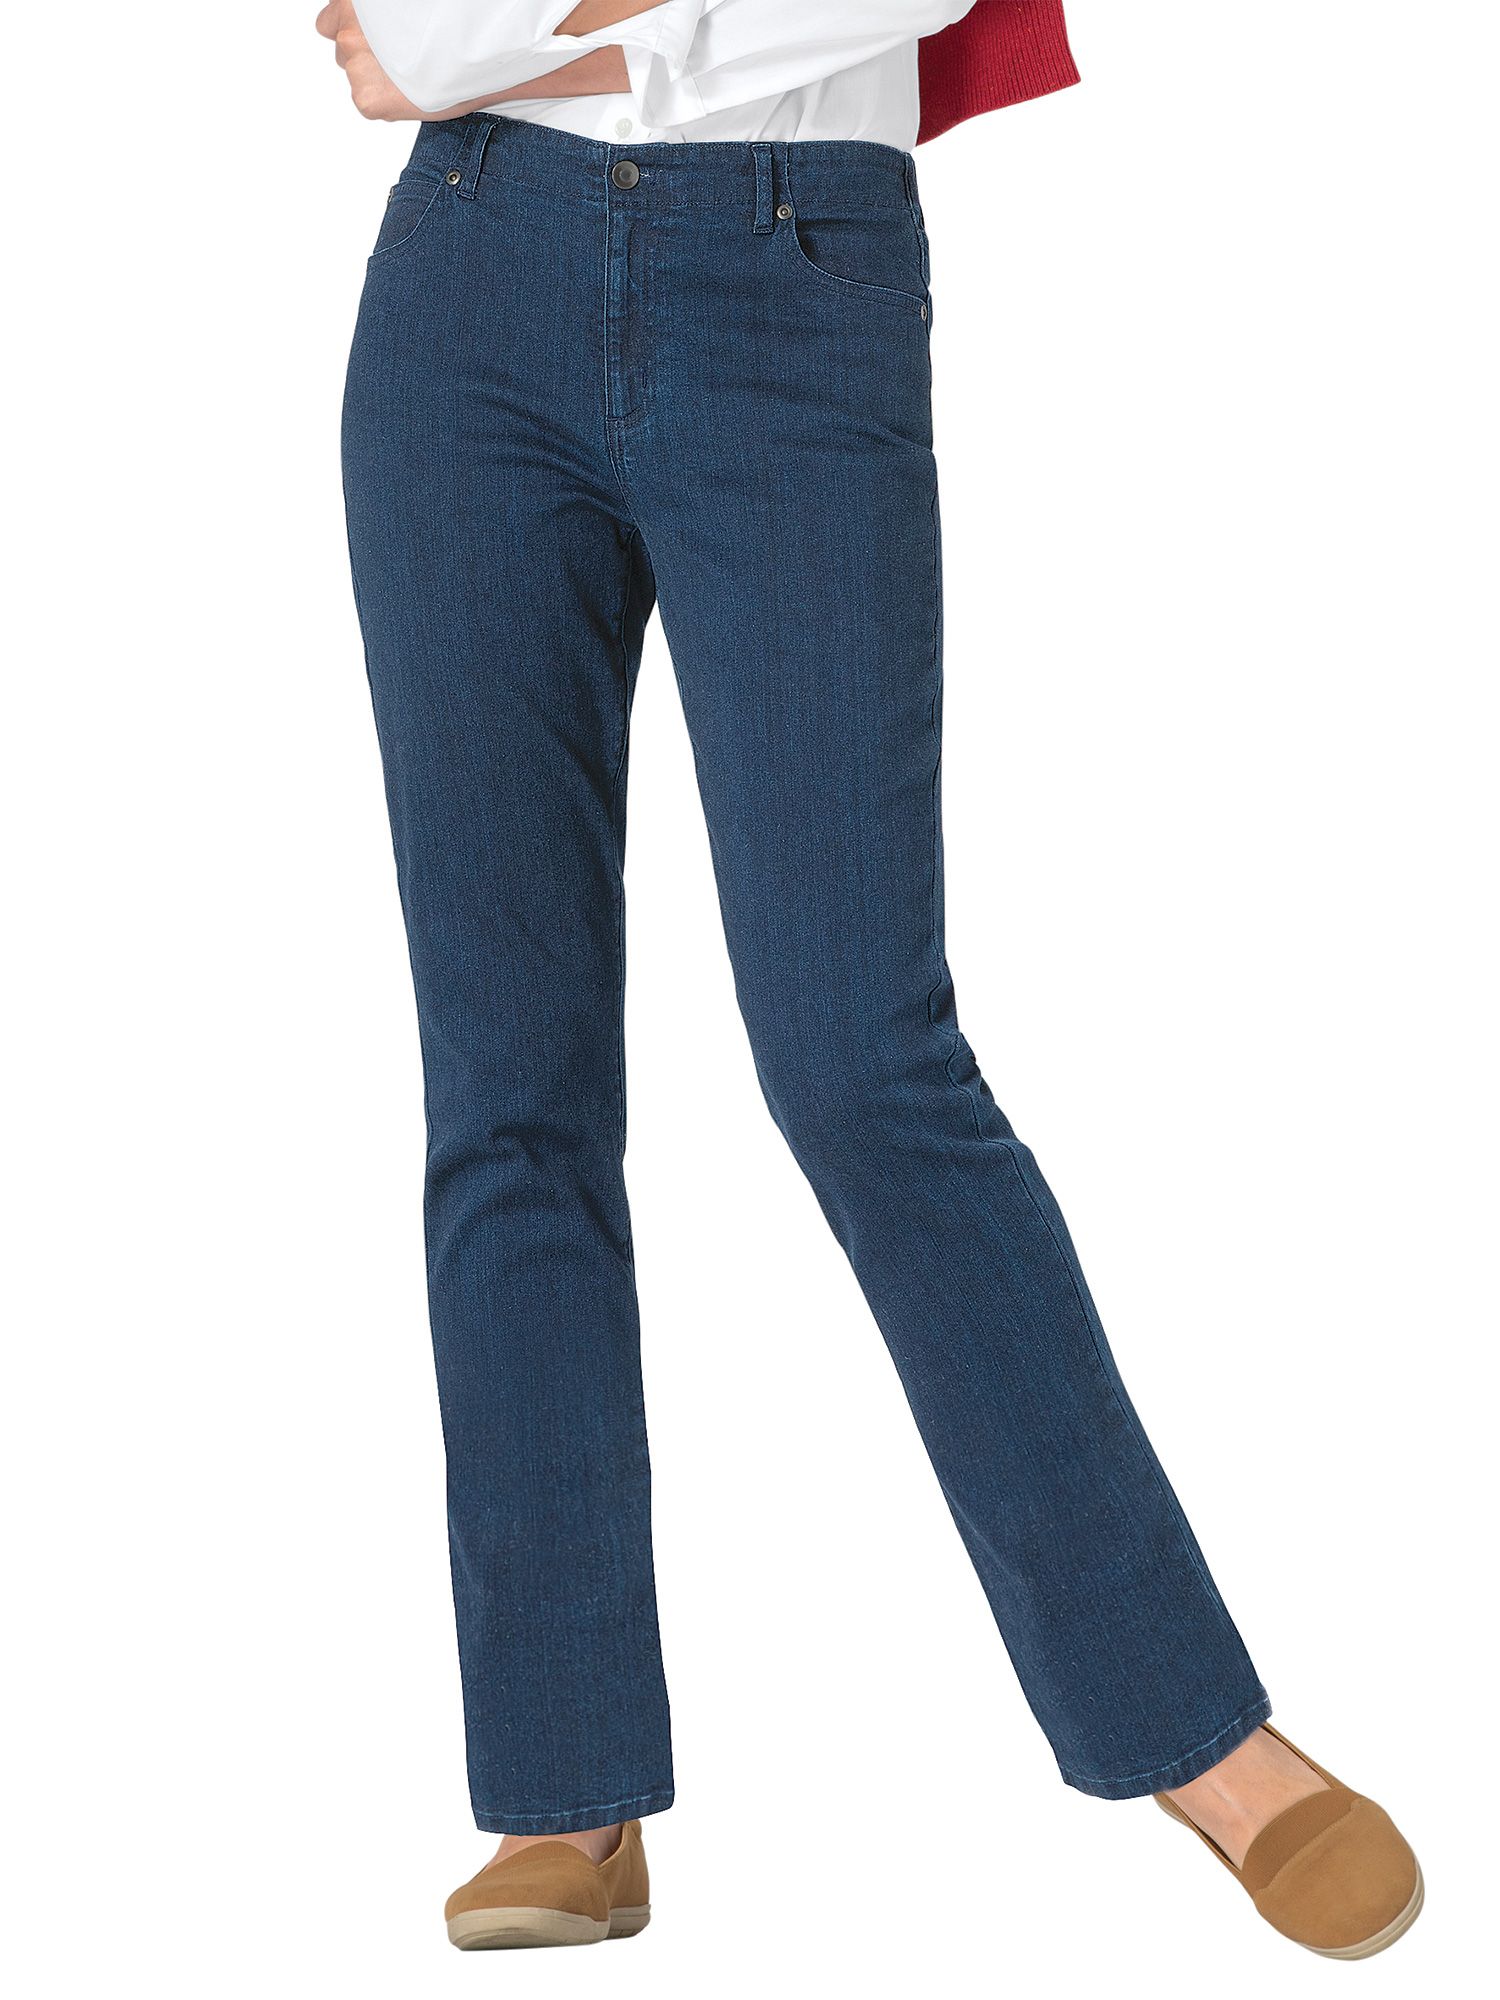 Dreamflex Denim Jeans for Women | Appleseed's